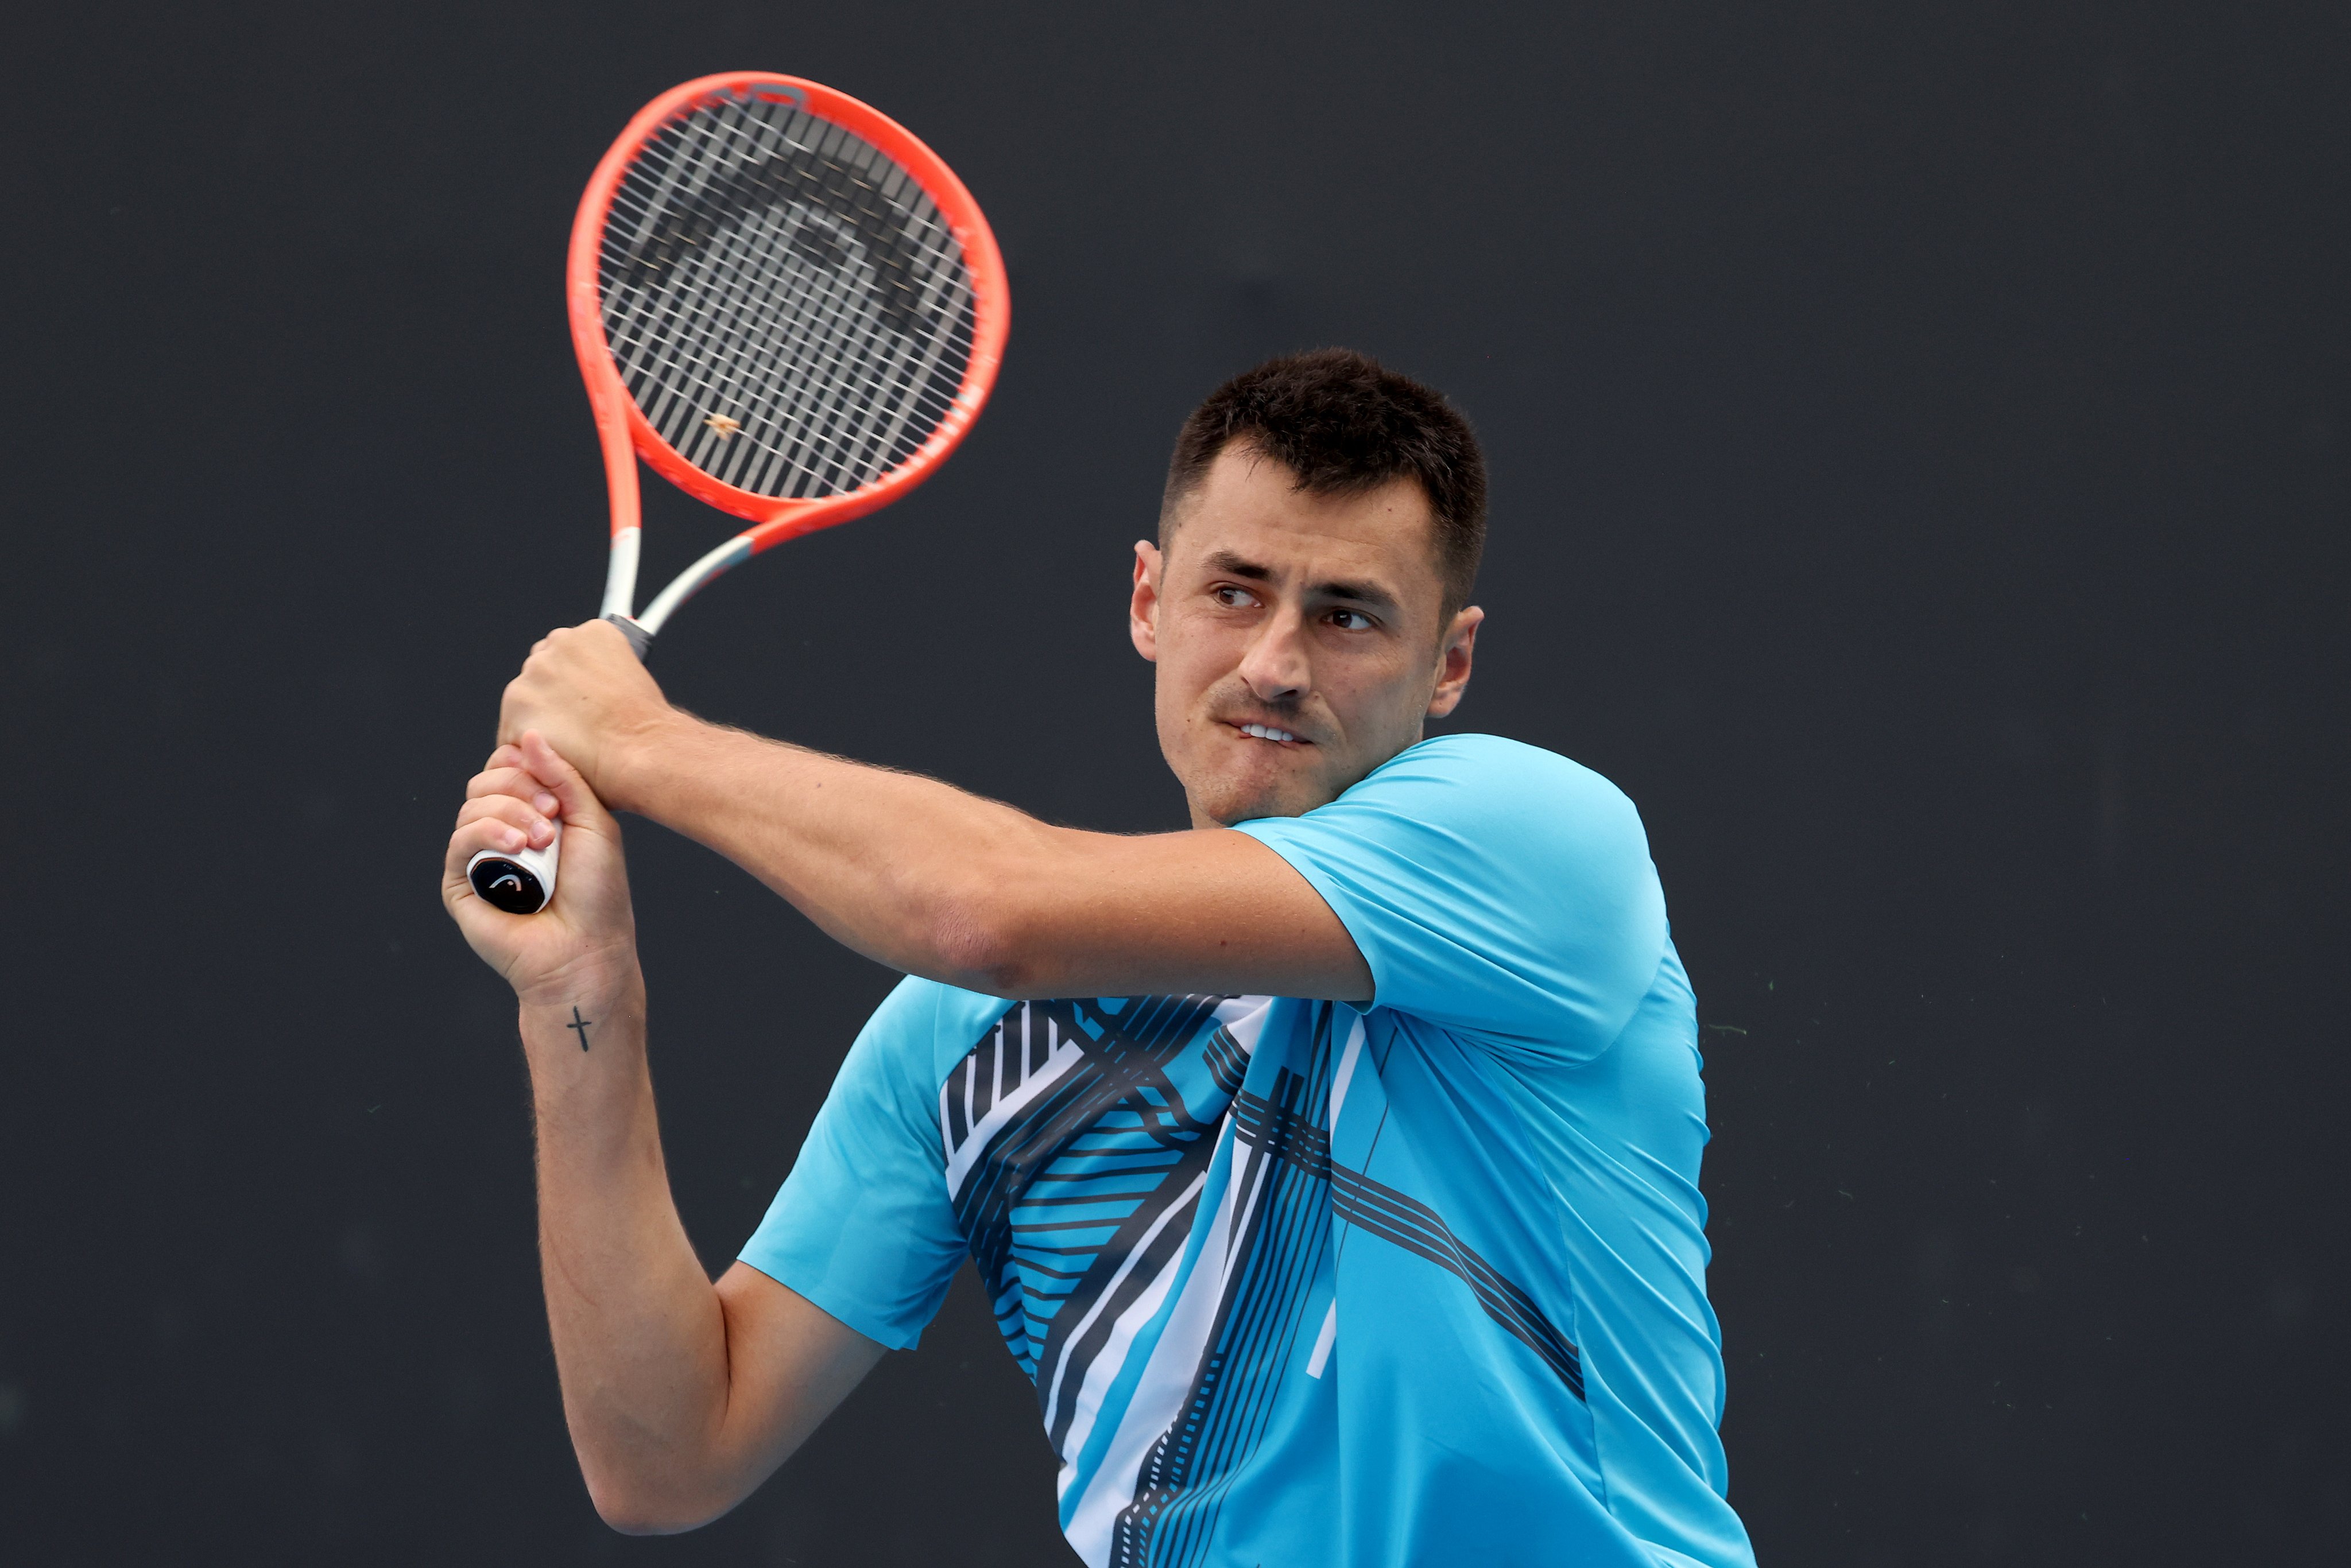 Томич с първа победа на турнир от Шлема от 2018 г. насам след отказване